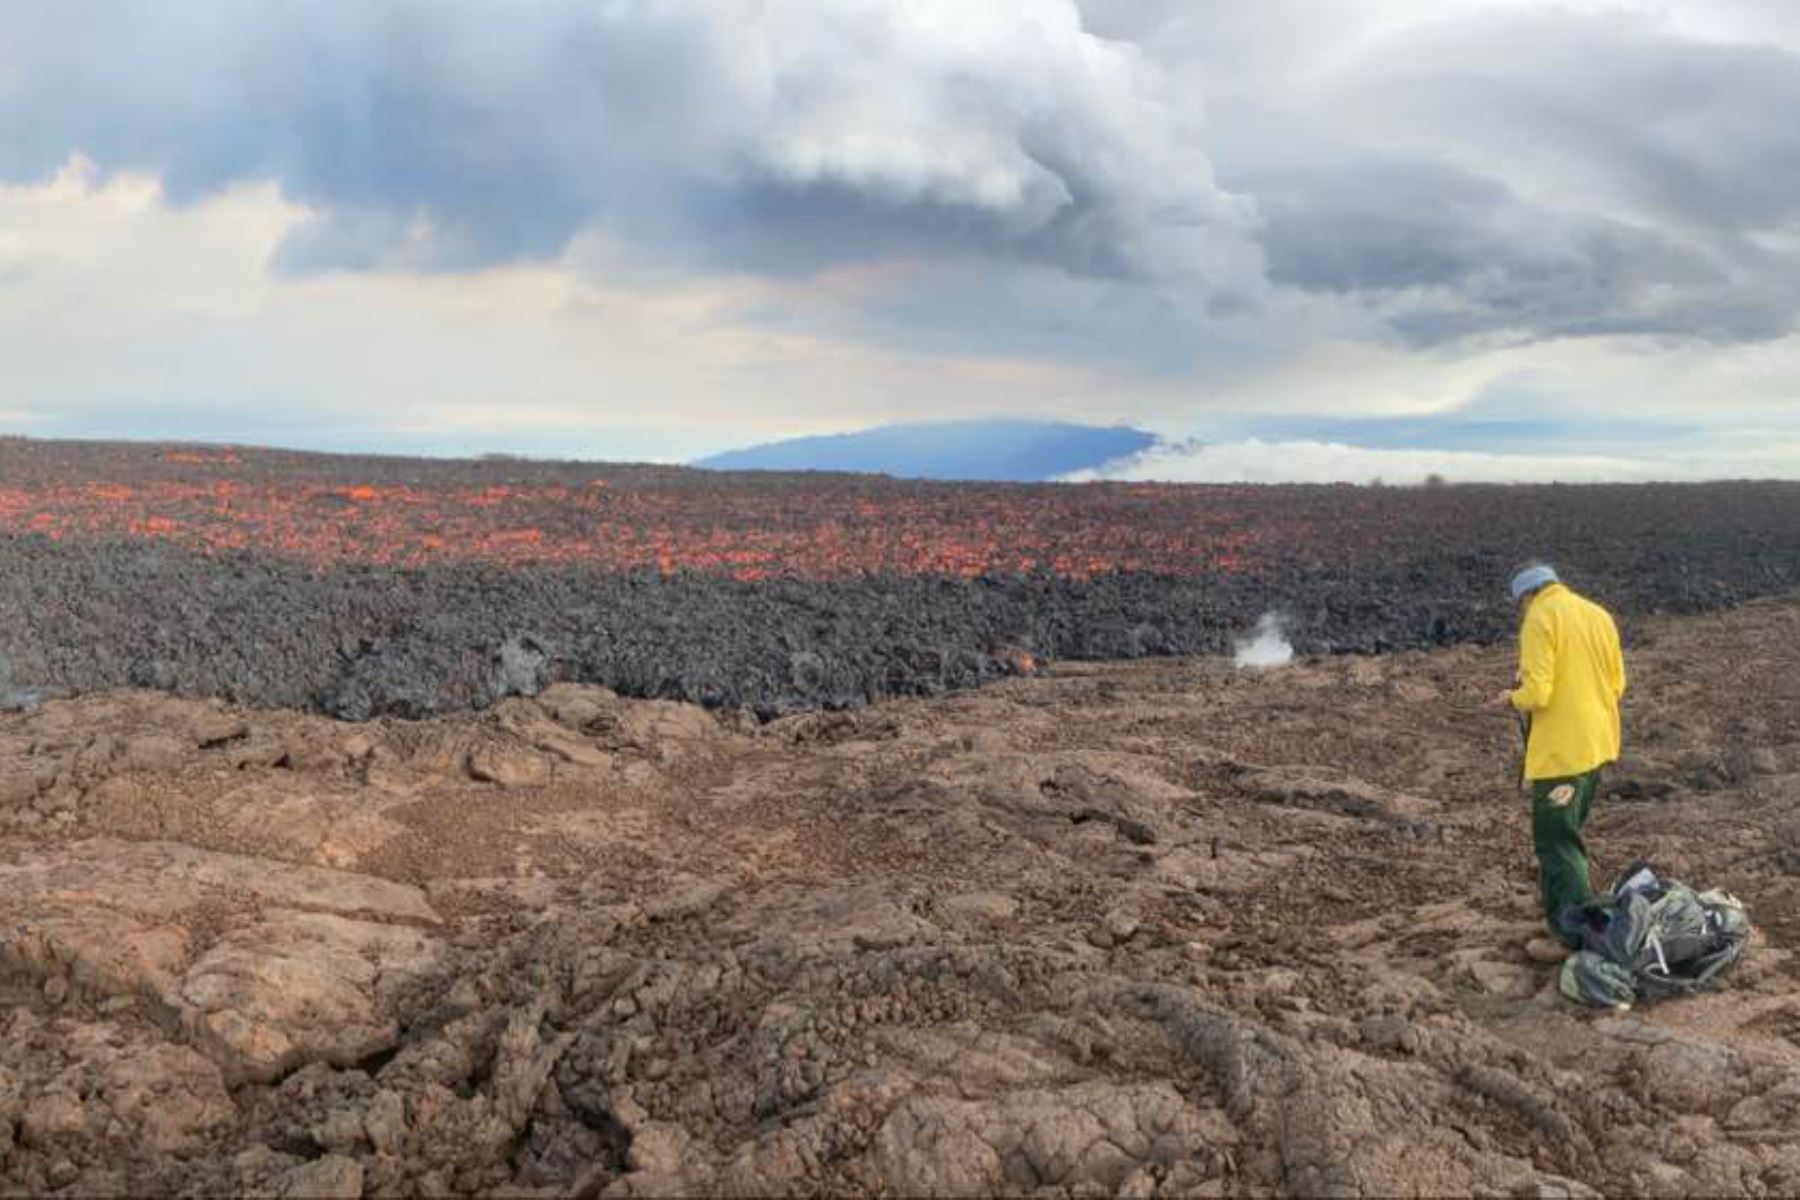 El volcán activo más grande del mundo, el Mauna Loa de Hawái, entró en erupción por primera vez en casi 40 años, informó el Servicio Geológico de Estados Unidos (USGS). La lava comenzó a fluir a la medianoche del domingo en la cumbre del Mauna Loa, uno de los cinco volcanes del Parque Nacional de los Volcanes de Hawái. Foto: Difusión/USGS